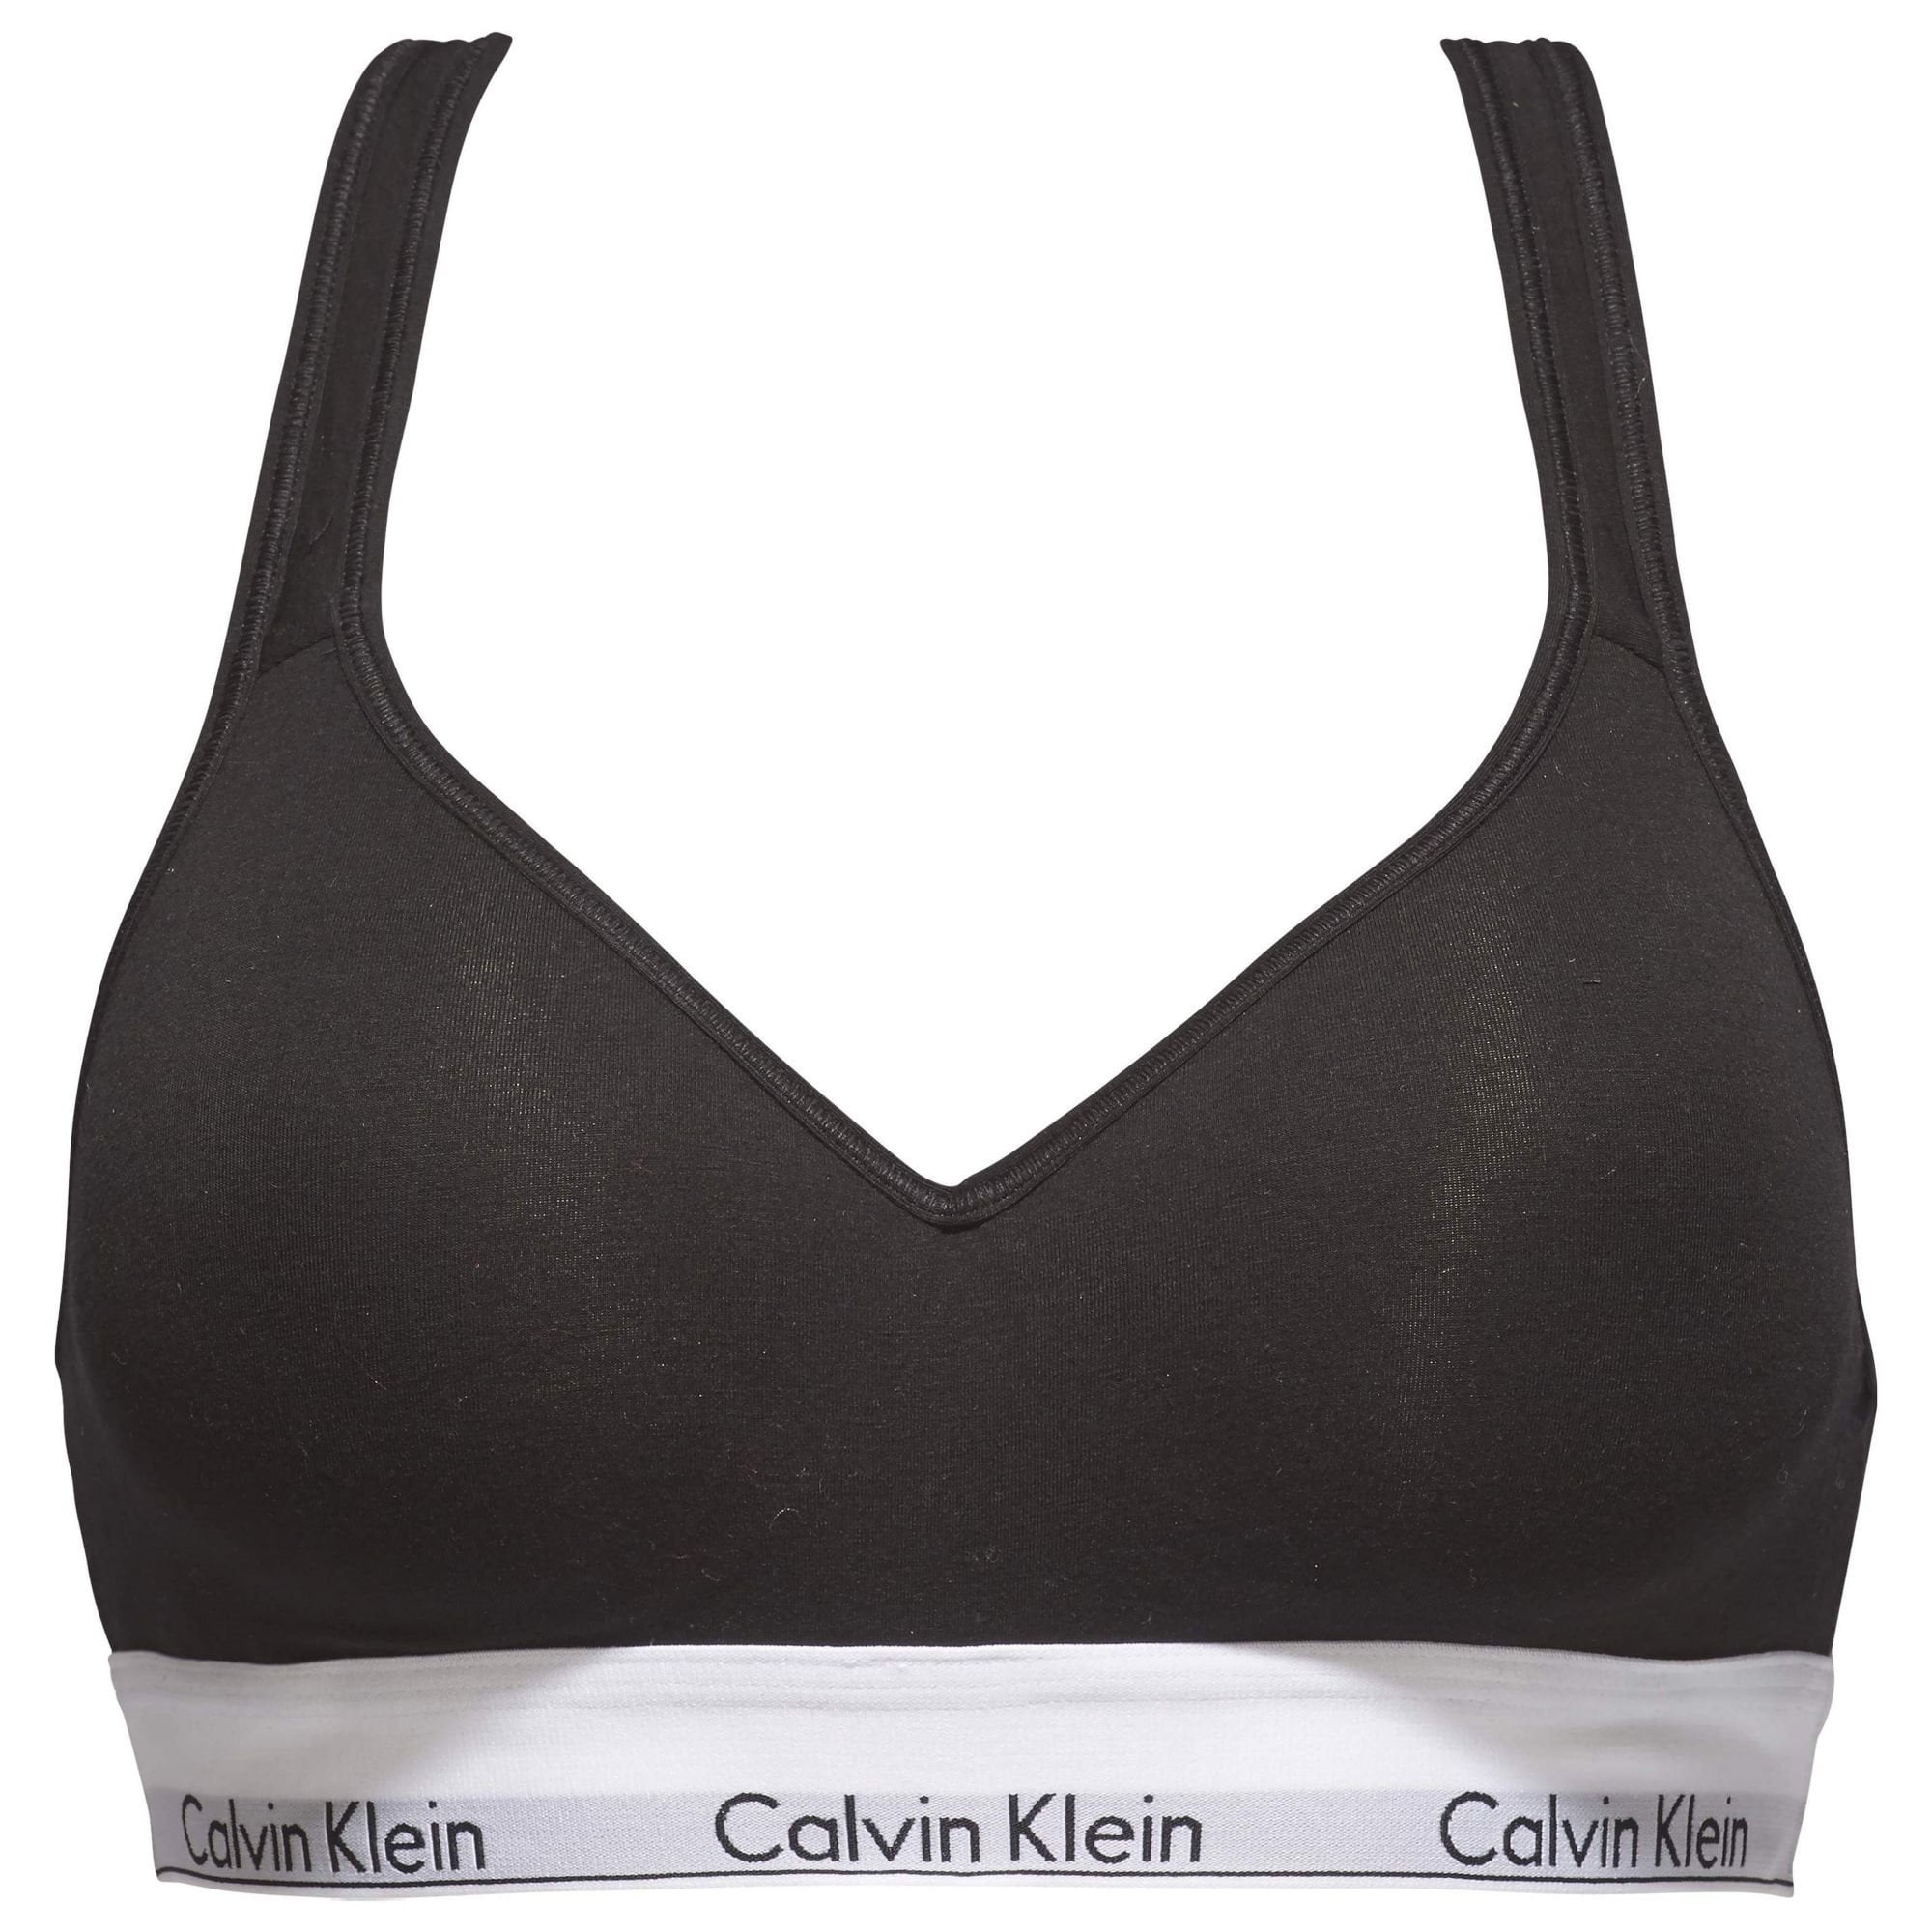 Calvin Klein Modern Cotton Bh zonder beugel voorgevormd 